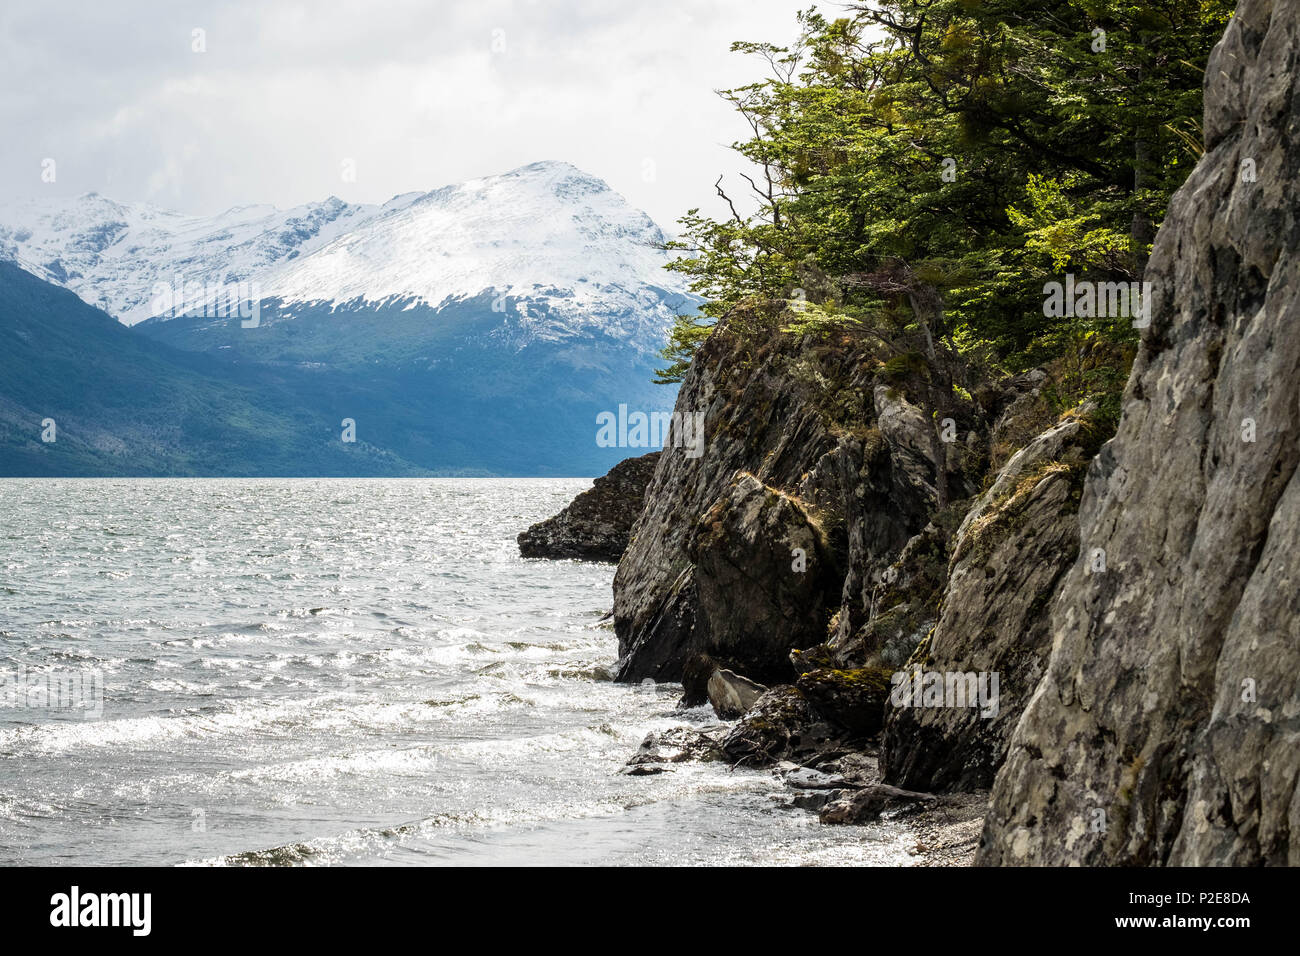 Une falaise borde le lac Acigami dans le parc national de Tierra del Fuego, les montagnes sont de l'autre côté. Ce lac relie l'Argentine et le Chili. Banque D'Images